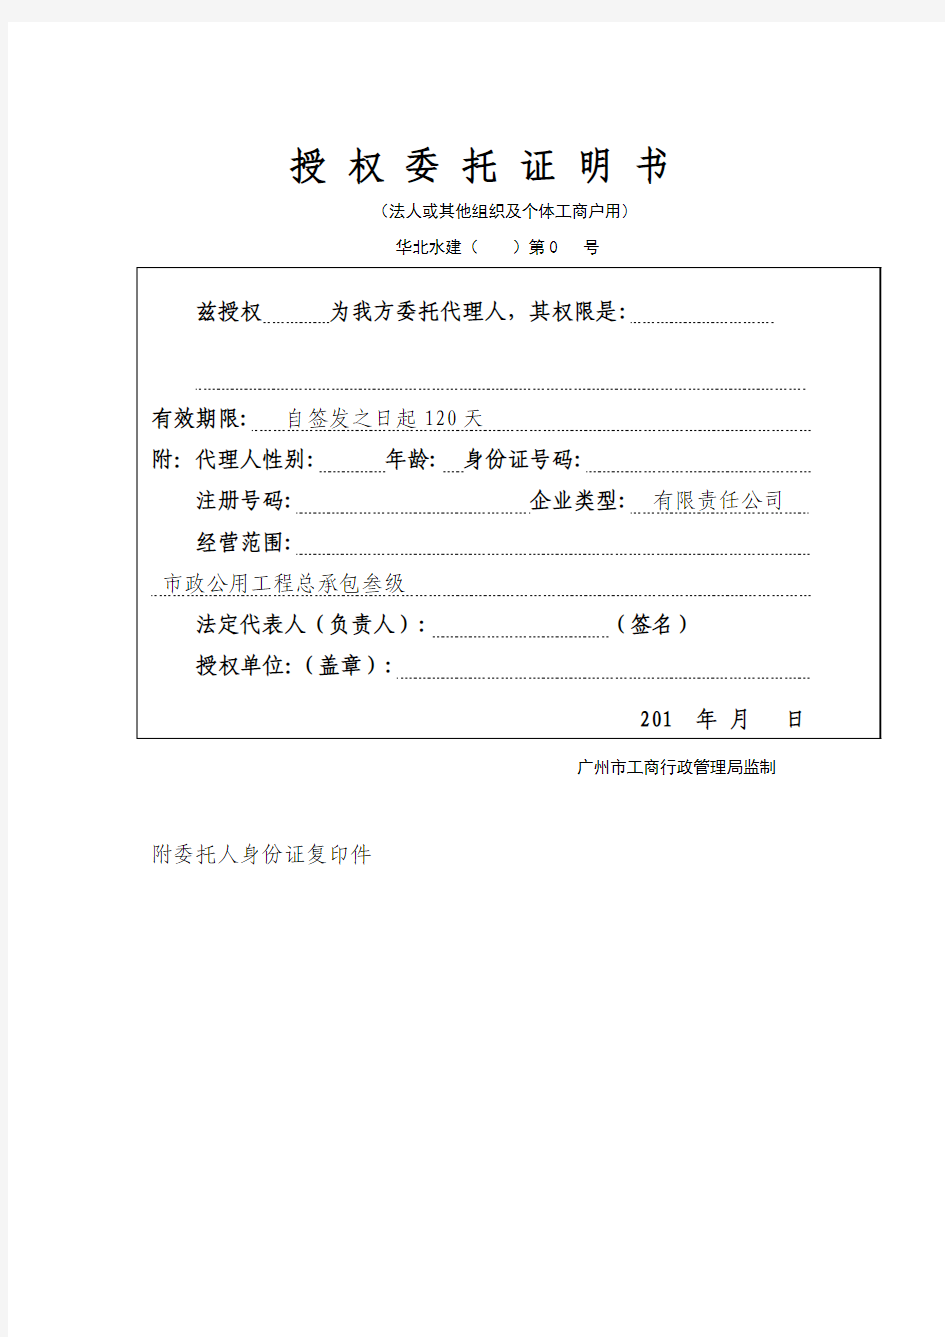 广州工商局格式法人证明书